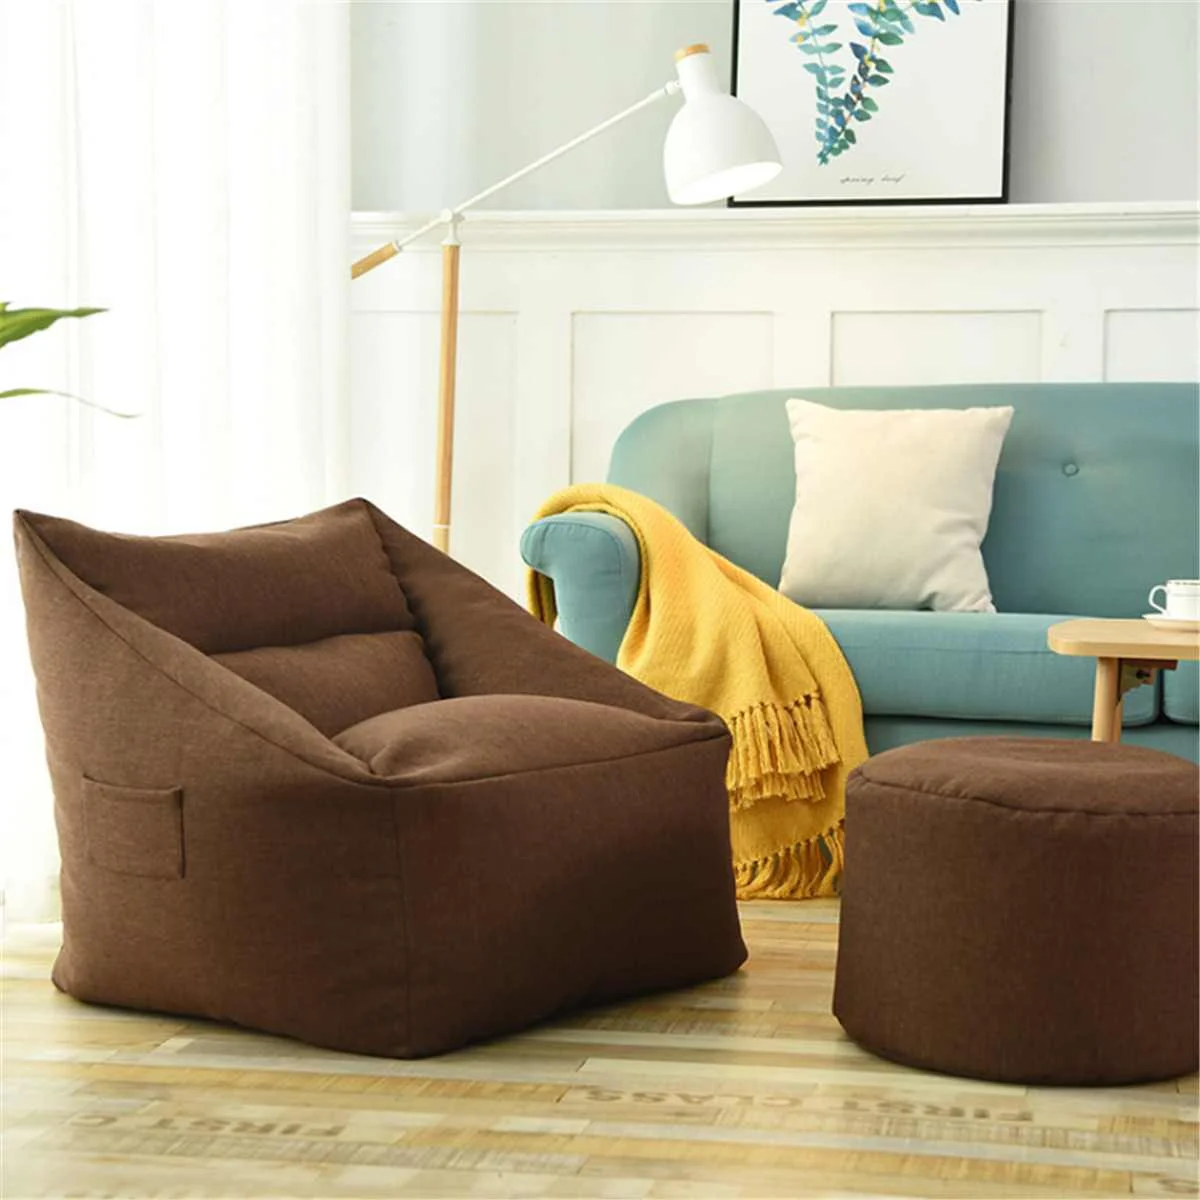 Водонепроницаемый мешок для бобов моющийся мешок для диванов ленивый диван крытое кресло чехол большой мешок для бобов кресло уютная игра желтый - Цвет: Коричневый